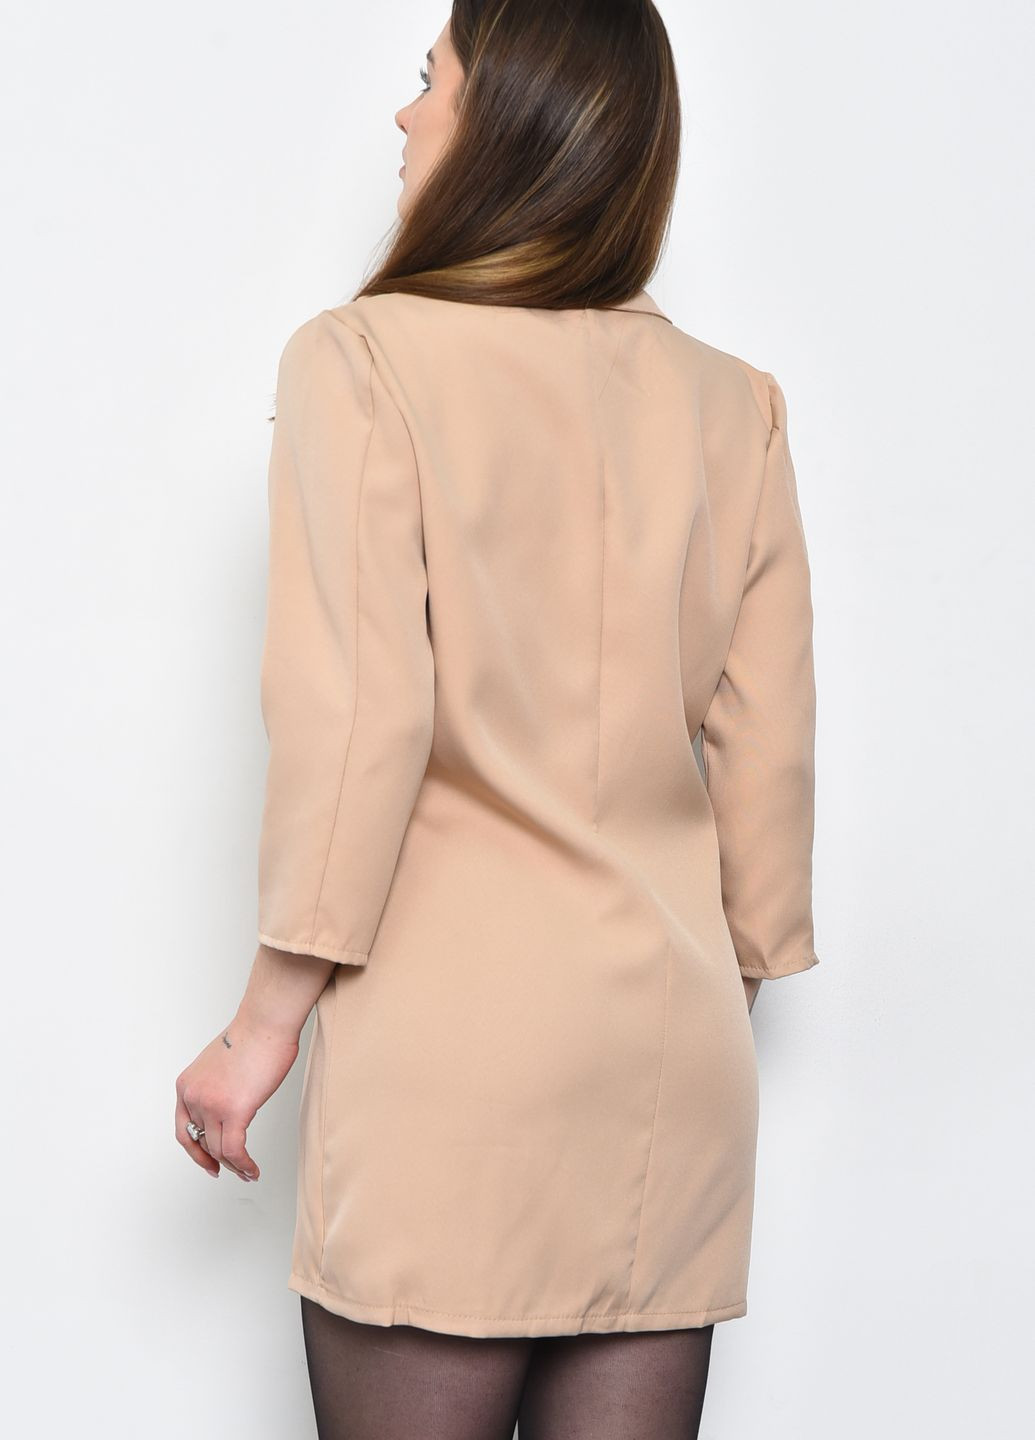 Коричневый женский пиджак женский цвета мокко Let's Shop однотонный - демисезонный